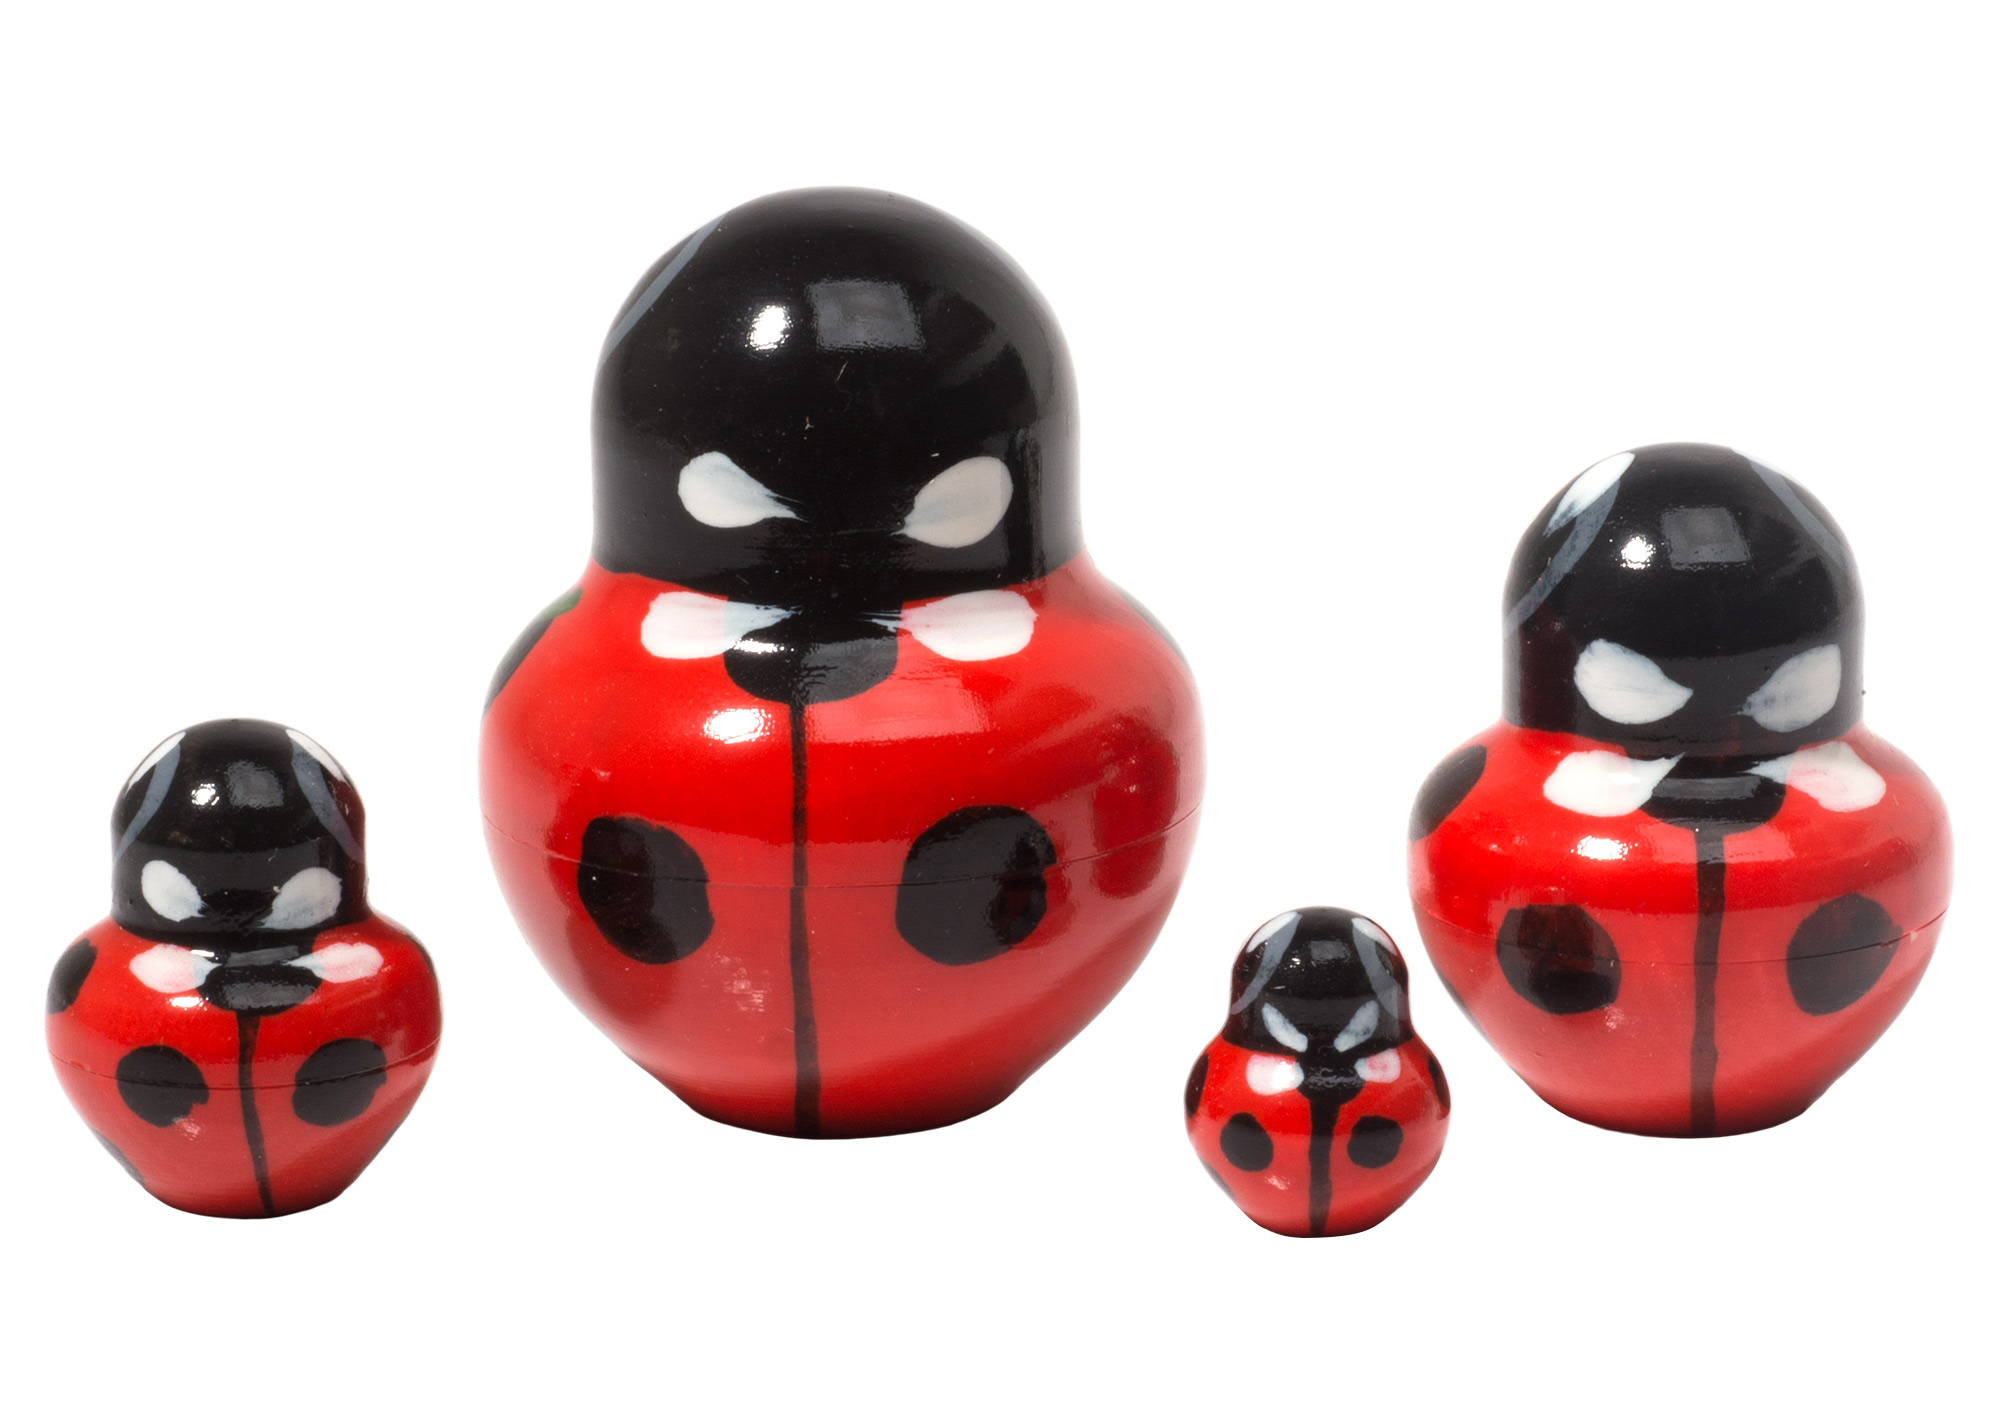 Buy Ladybug Nesting Doll 4pc./2.25" at GoldenCockerel.com